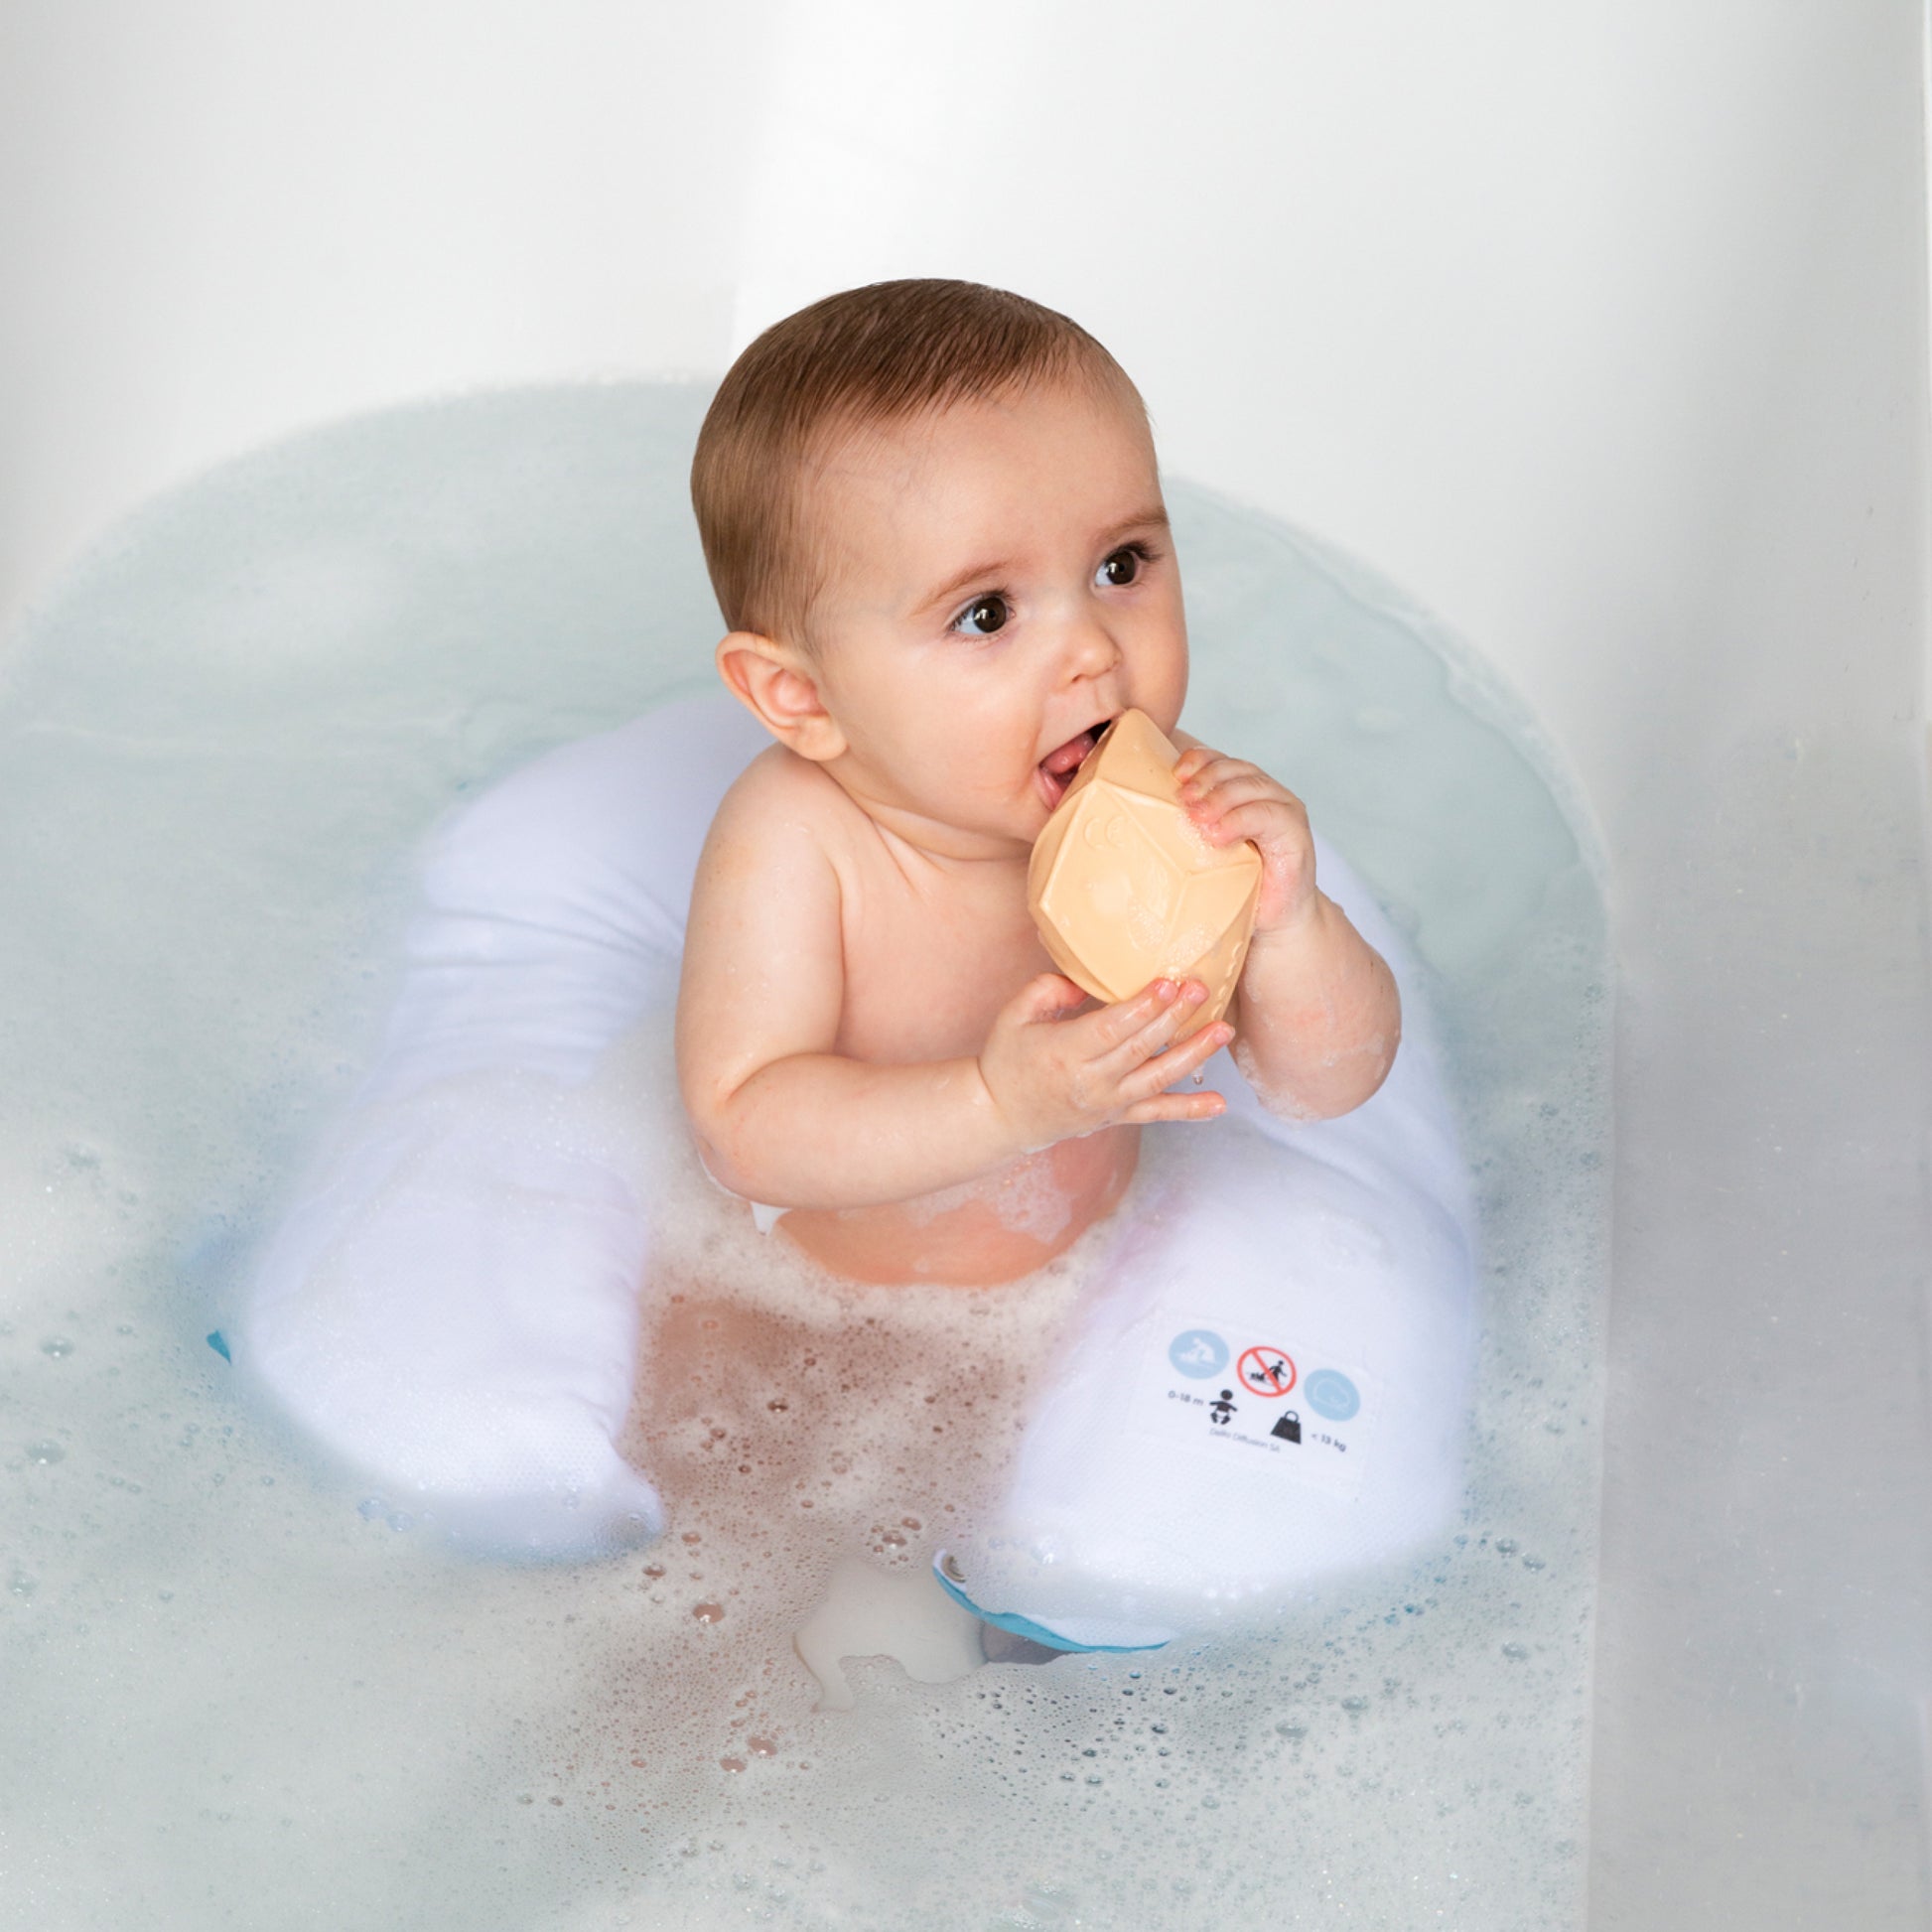 Almofada de banho para dar banho ao seu bebé sem mãos. O bebé pode deitar-se ou sentar-se na água em segurança. Segura para o bebé e sem esforço para as costas dos pais